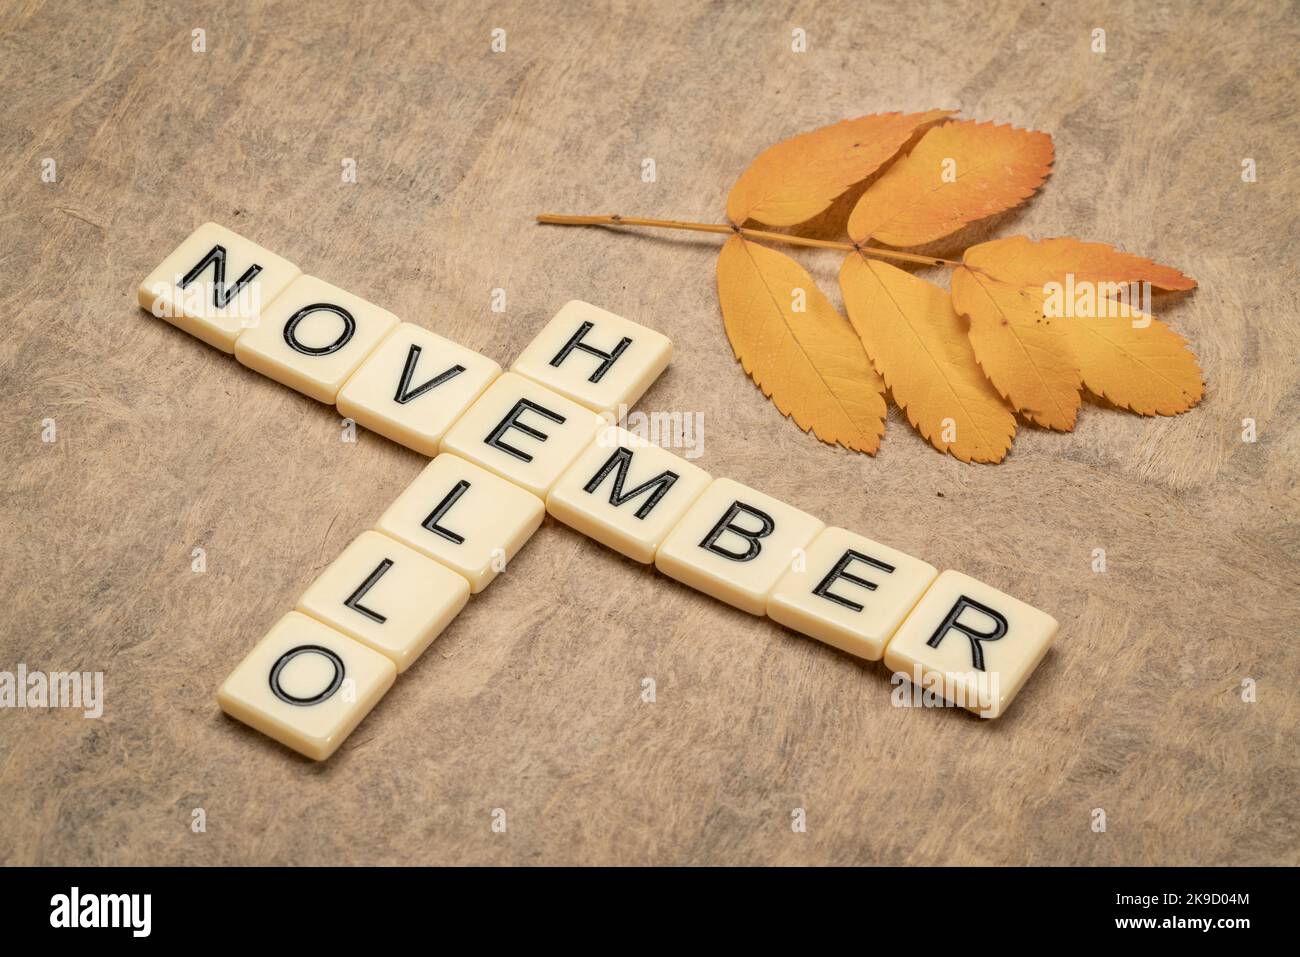 Hallo November Kreuzworträtsel in Elfenbein Buchstaben Blöcke mit einem gelben Blatt, Herbst Urlaub Konzept Stockfoto